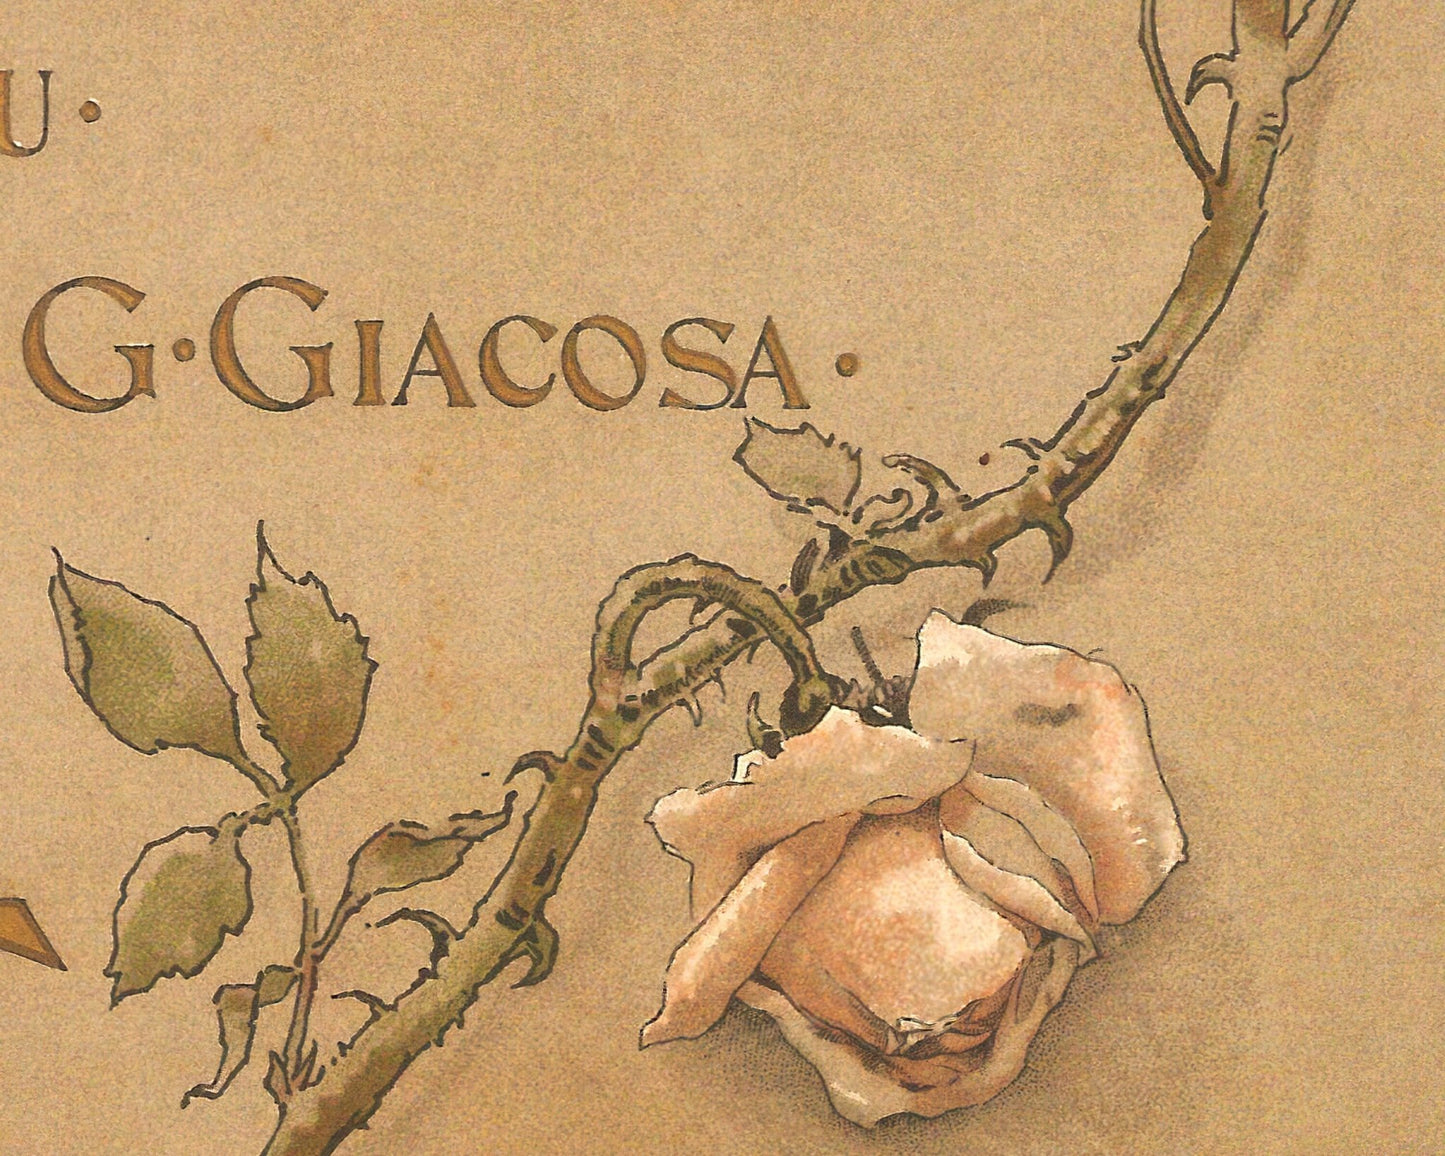 Vintage Libretto Cover "Tosca" (c.1899) - Puccini Opera - Mabon Gallery